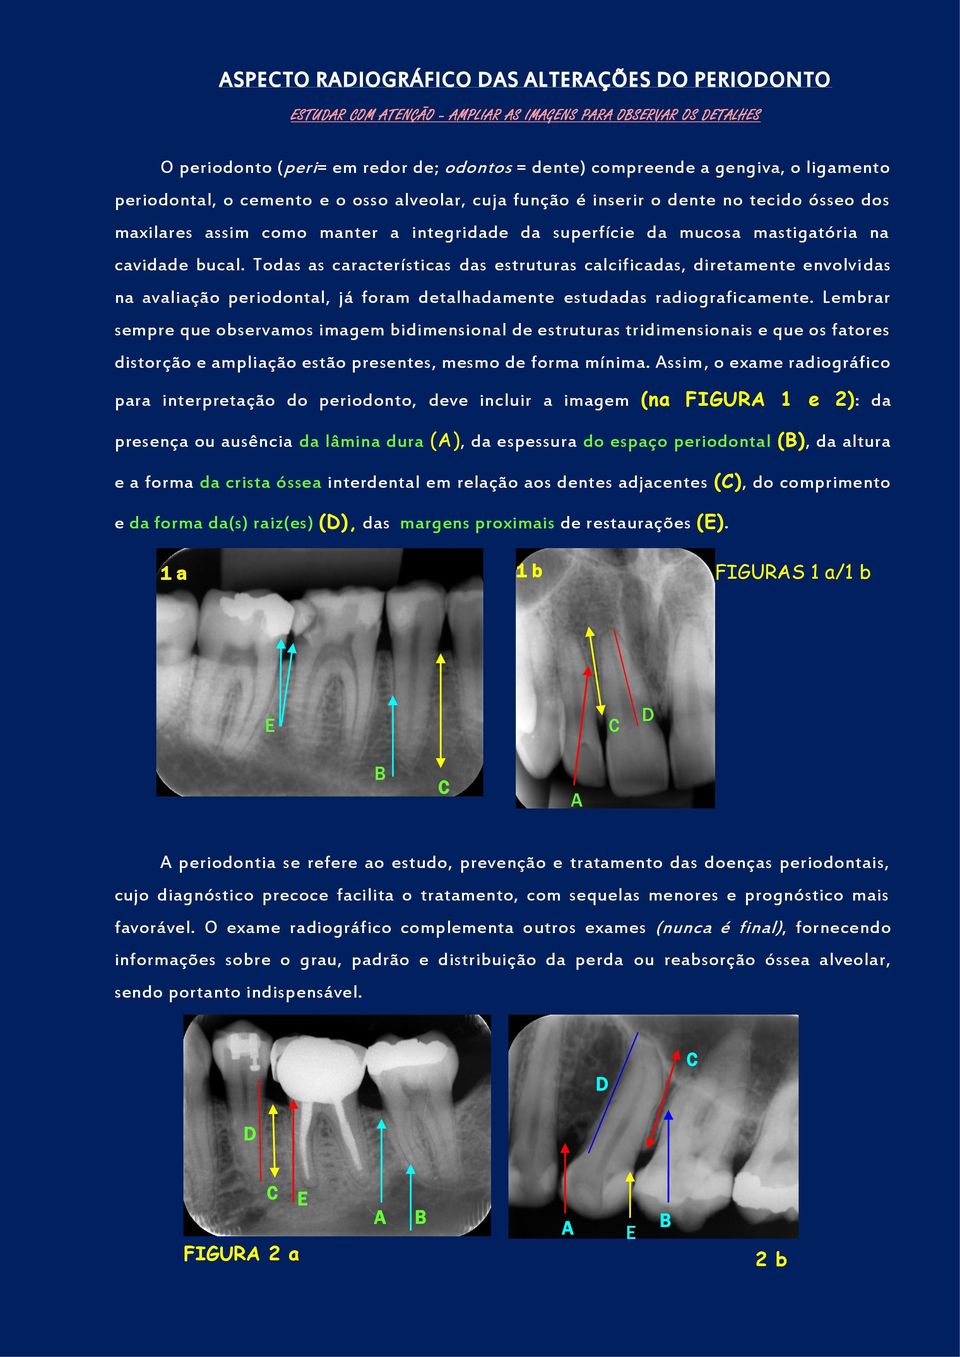 Todas as características das estruturas calcificadas, diretamente envolvidas na avaliação periodontal, já foram detalhadamente estudadas radiograficamente.